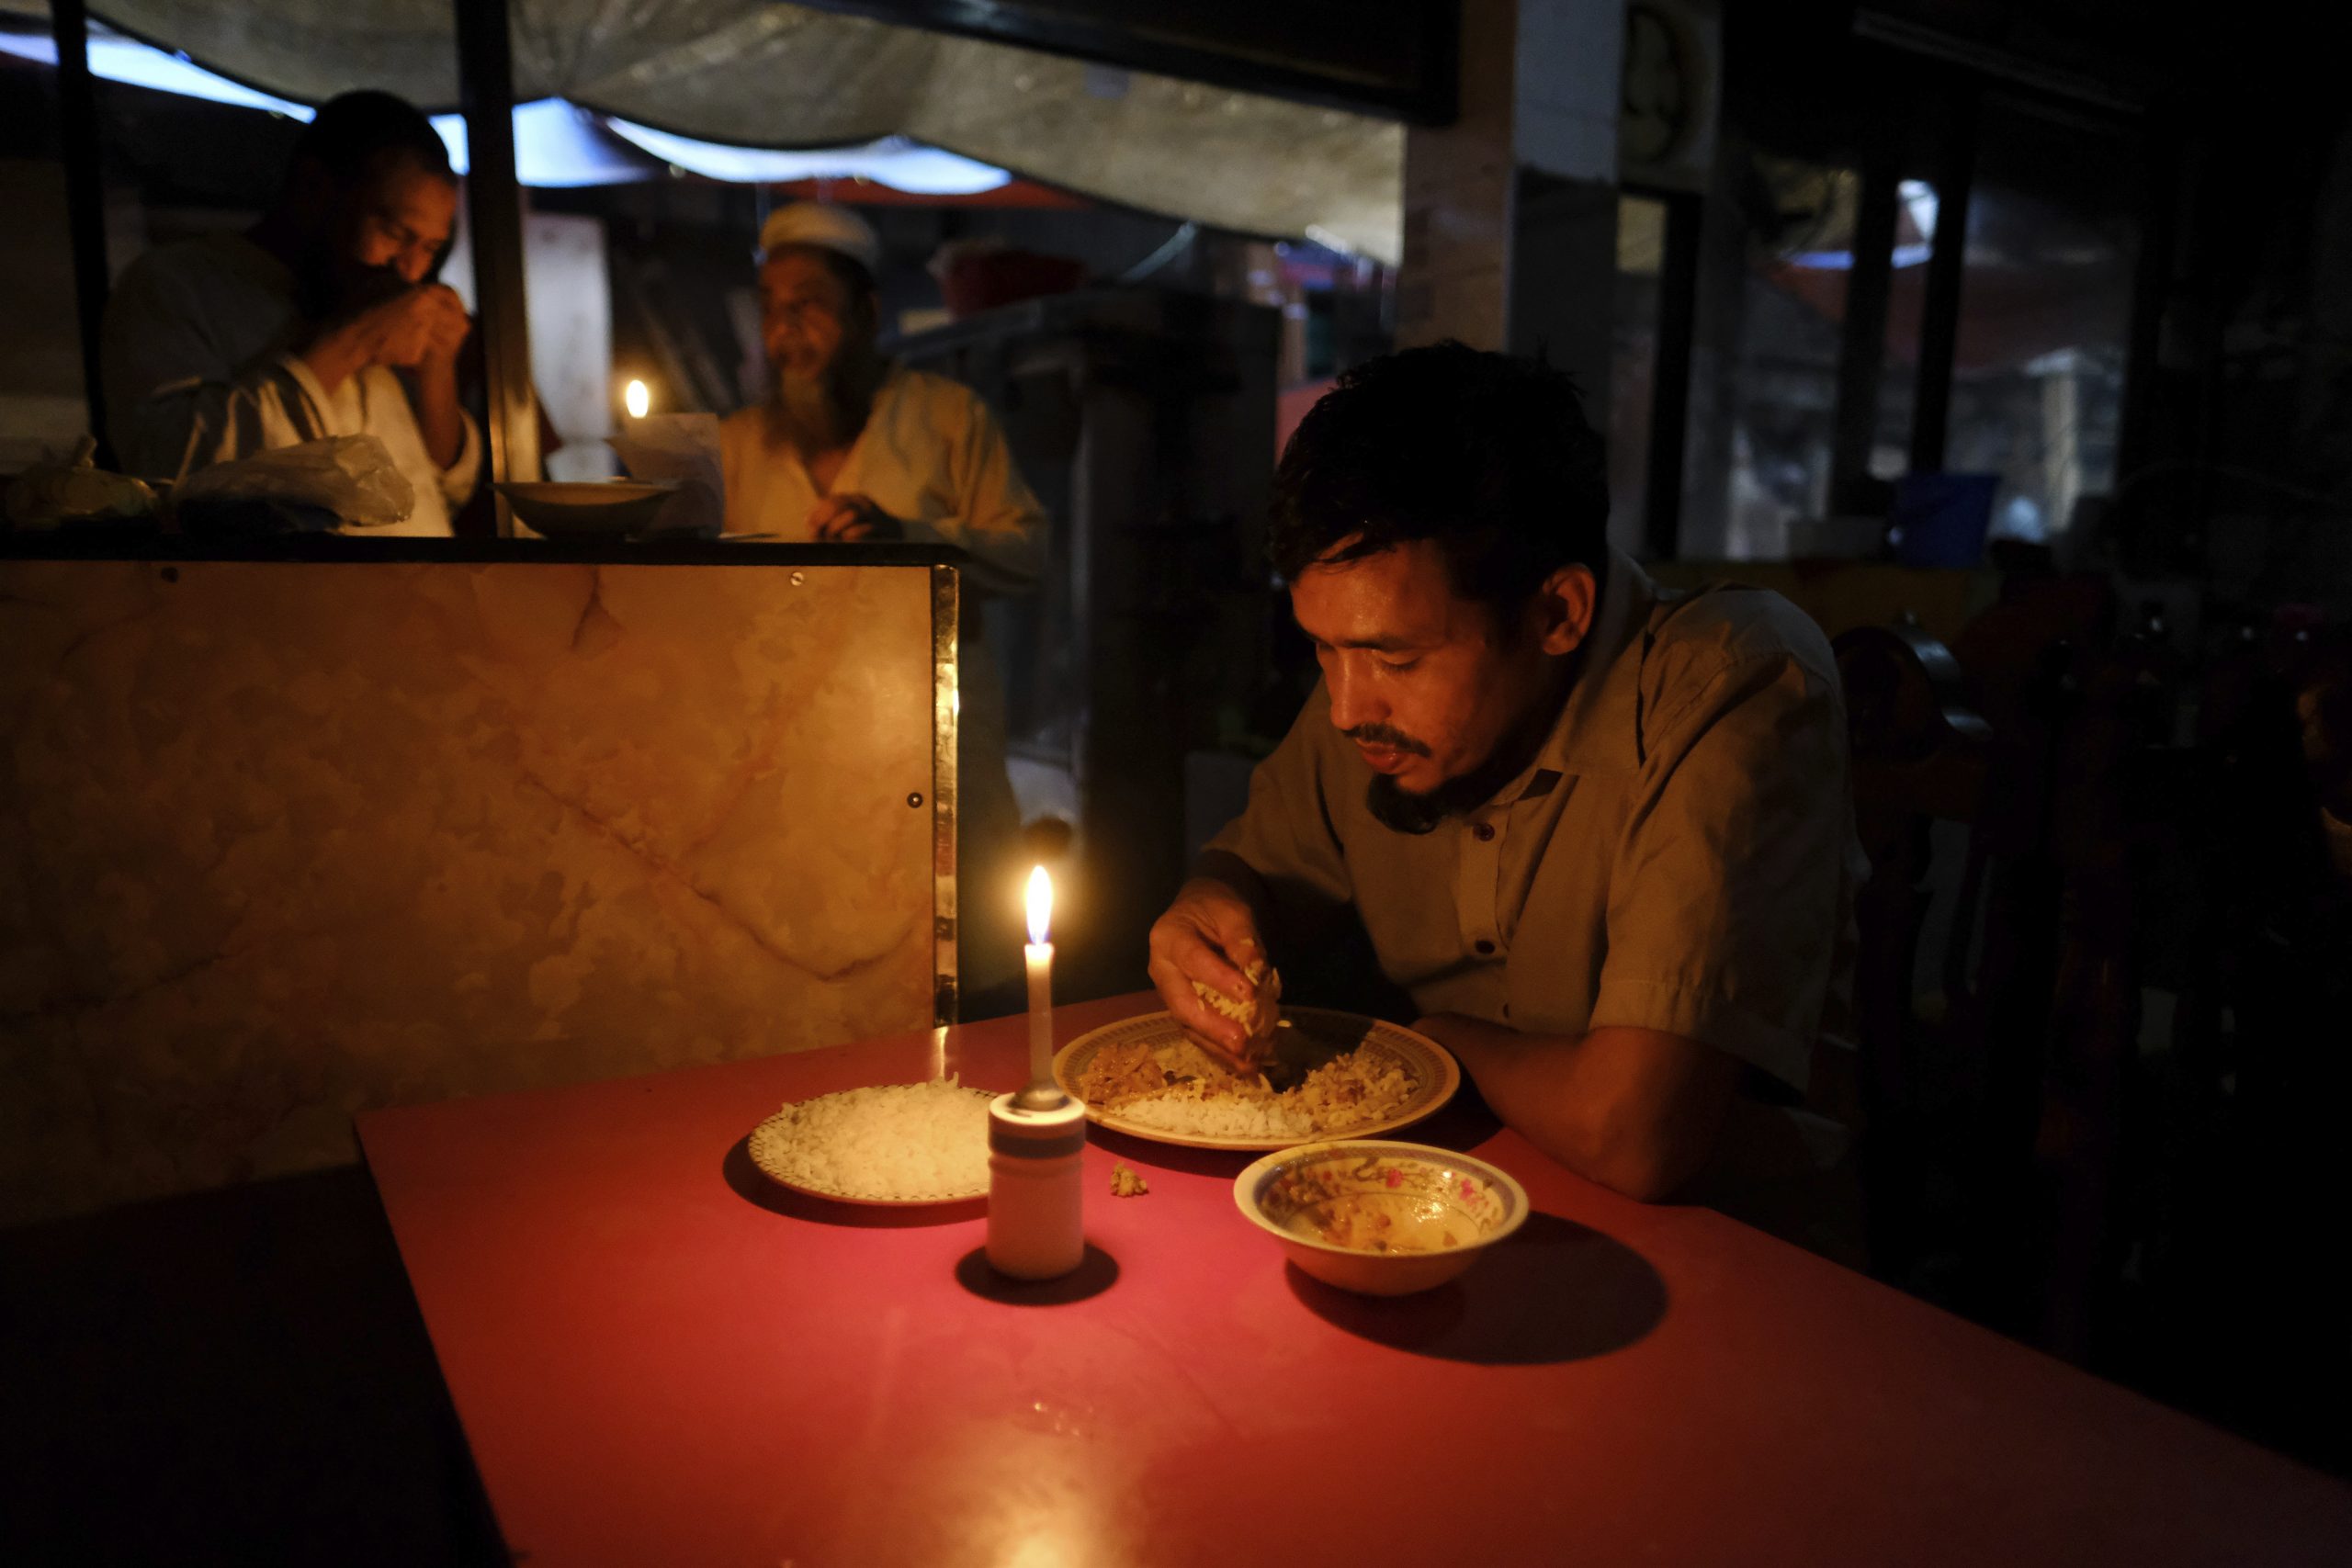 孟加拉电网大故障 1.3亿人无电可用